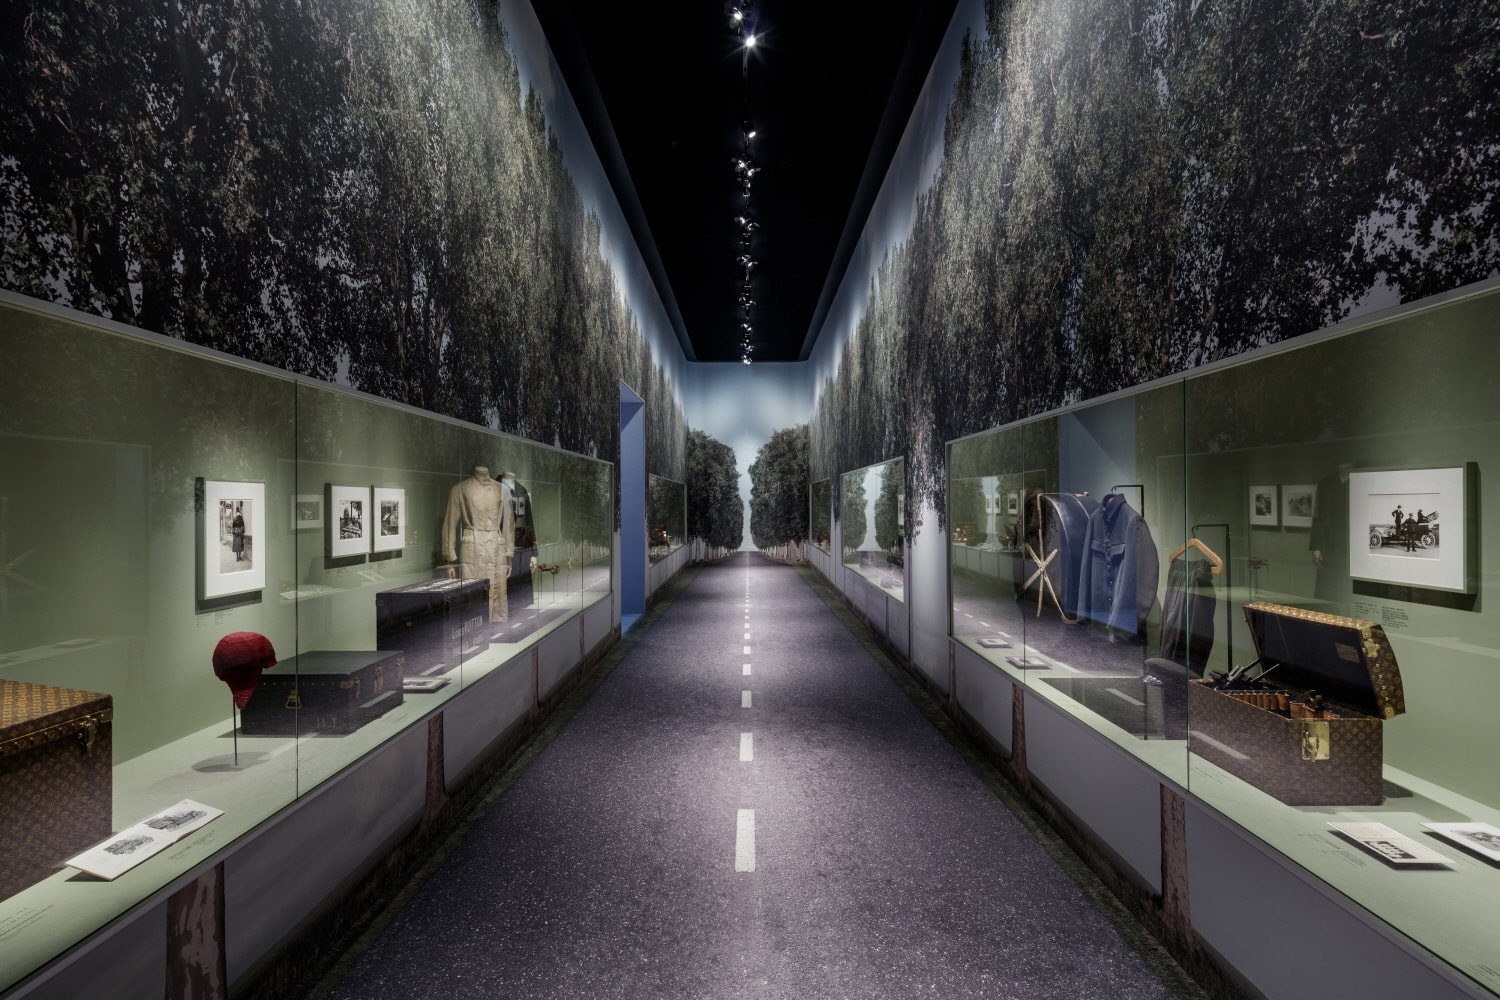 비행하라 항해하라 여행하라 루이비통 2017 서울 전시 Volez Voguez Voyagez Louis Vuitton Exhibition in Seoul